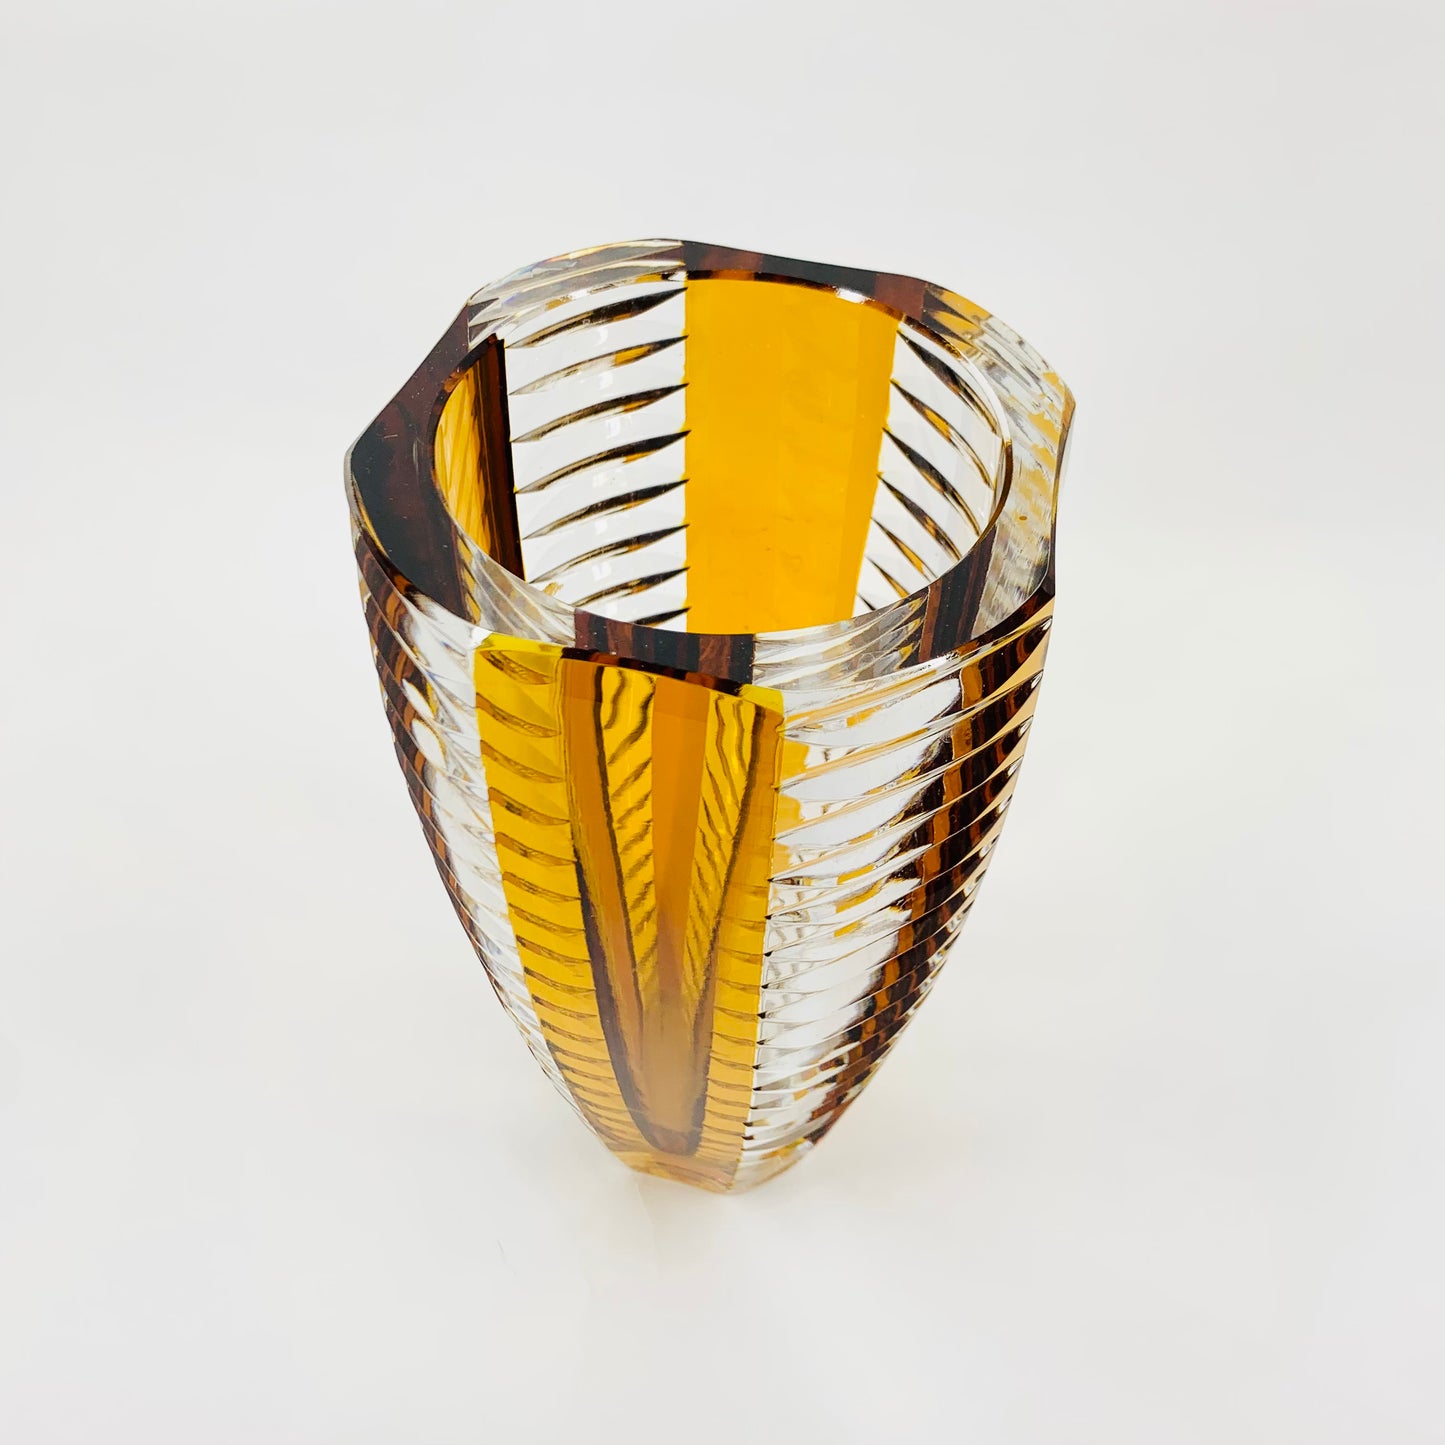 Antique Art Deco gold enamel crystal vase by Karl Palda